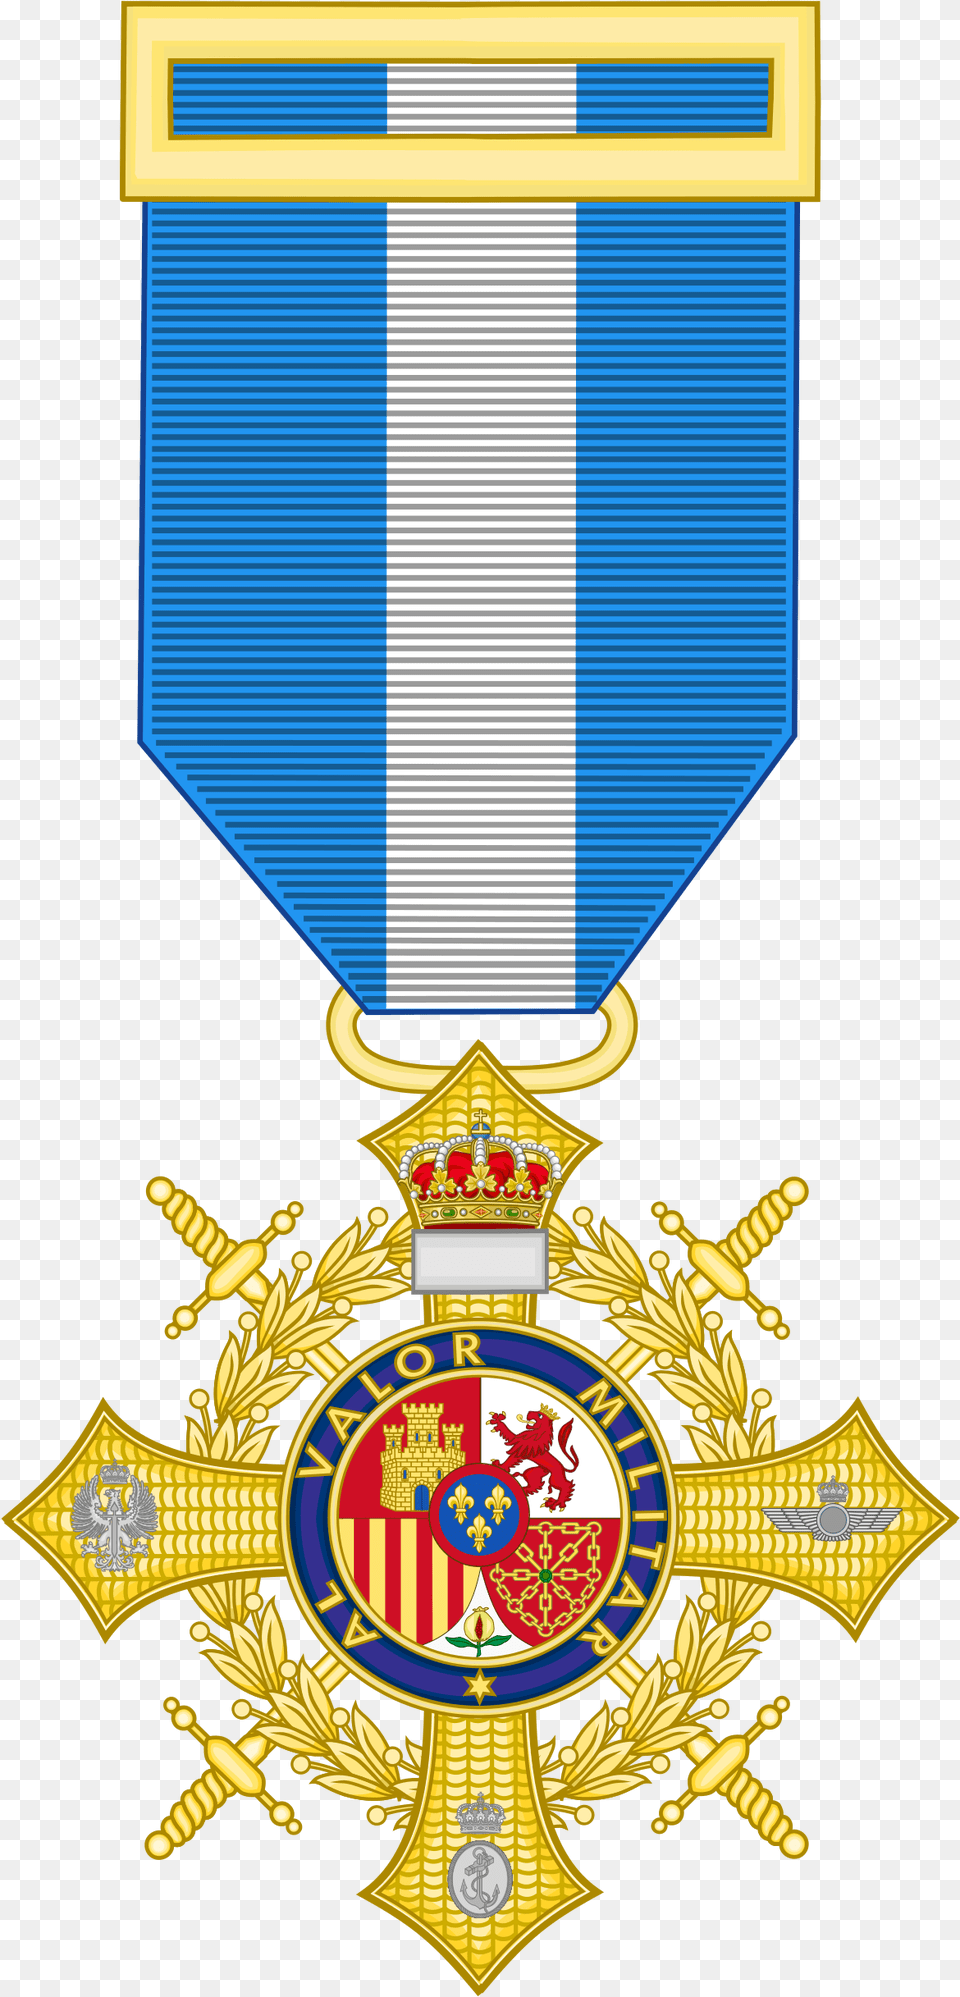 Cruz De Guerra Wikipedia Crest, Badge, Logo, Symbol, Emblem Free Png Download